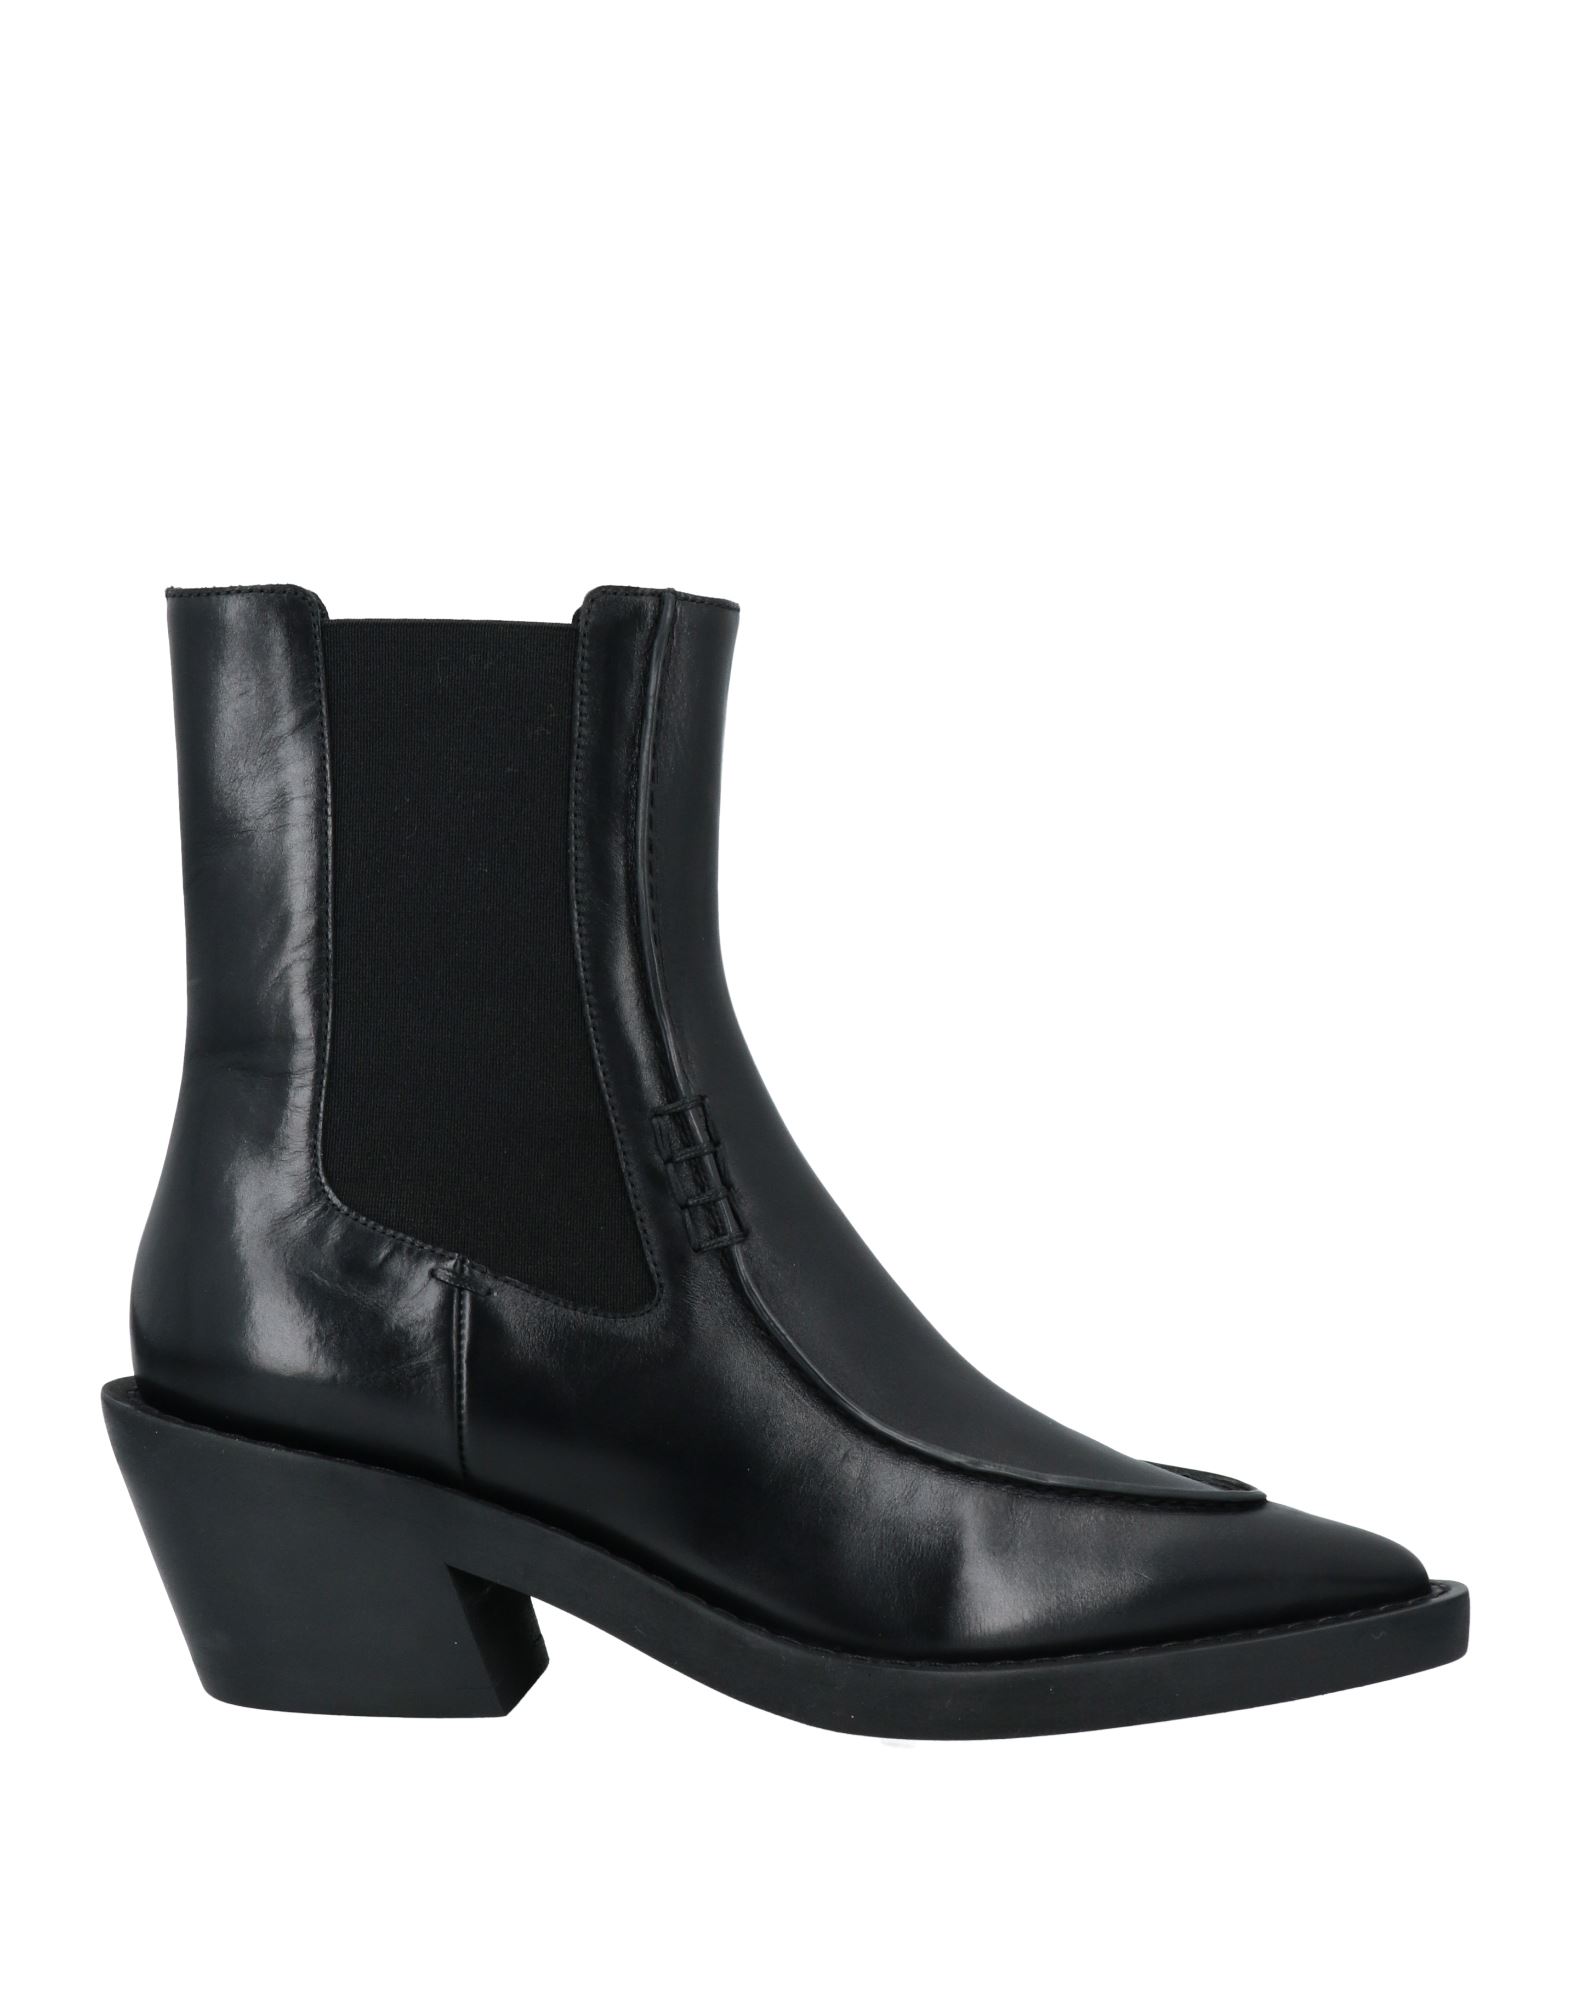 Shop Khaite Woman Ankle Boots Black Size 7 Leather